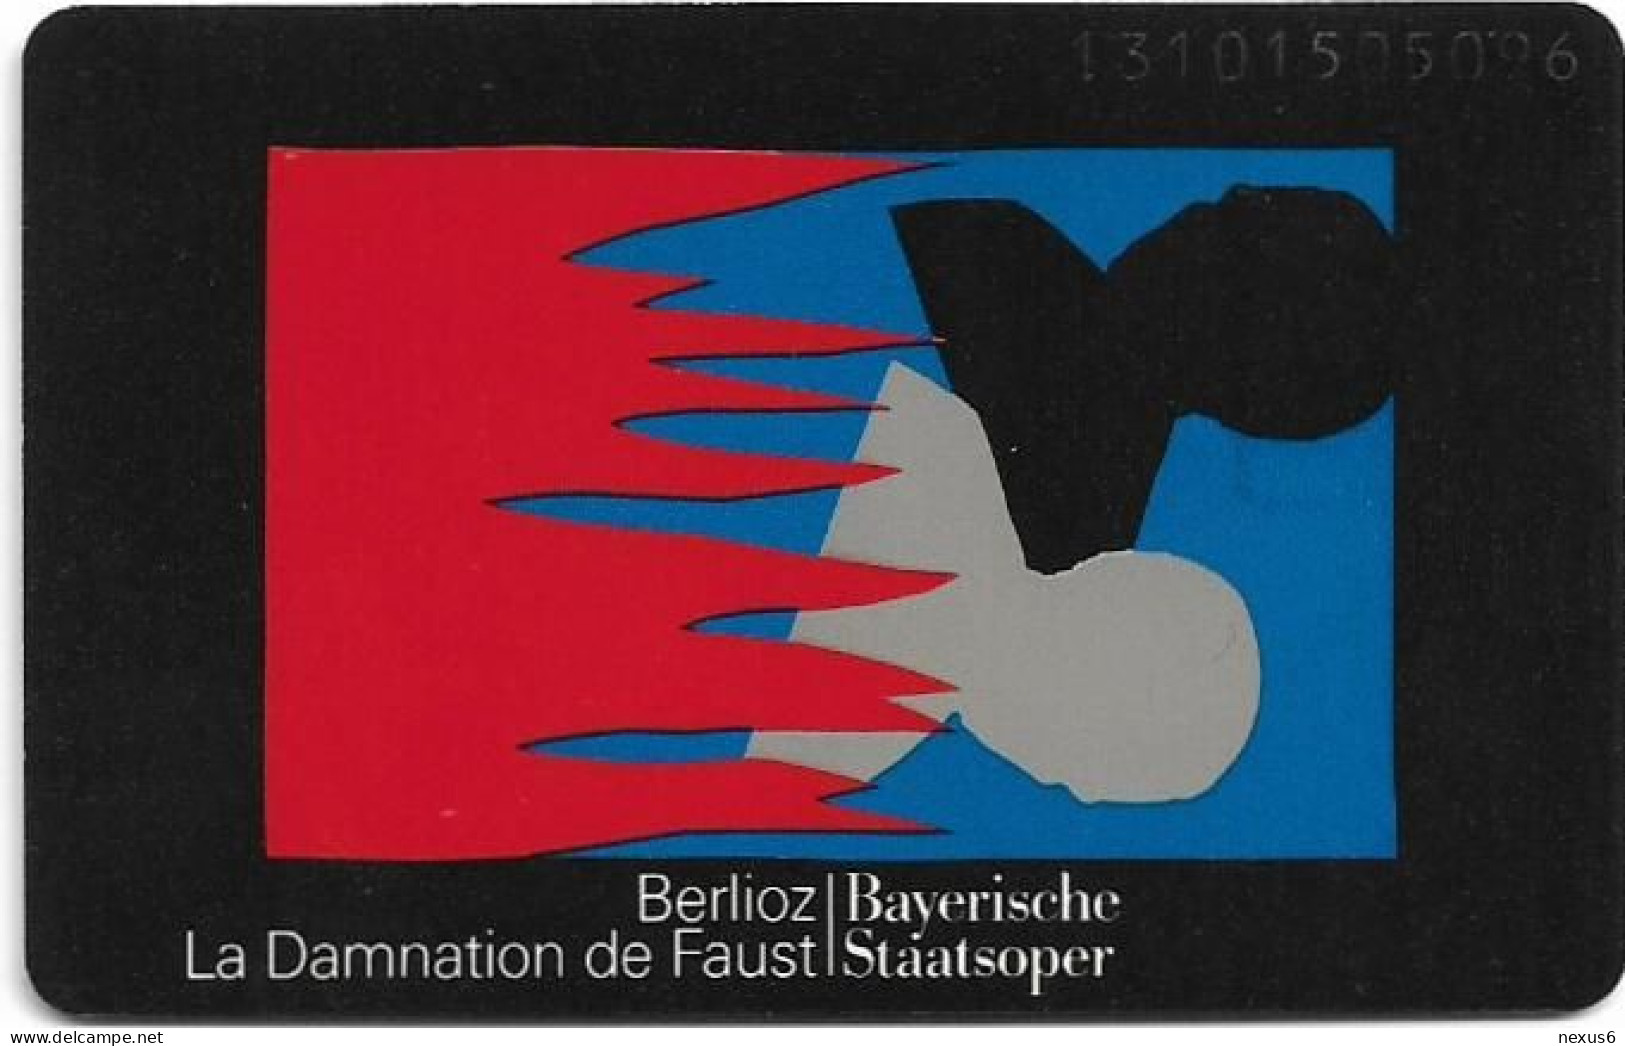 Germany - Bayerische Staatsoper 3 – La Damnation - O 0328A - 09.1993, 6DM, 3.000ex, Used - O-Series: Kundenserie Vom Sammlerservice Ausgeschlossen